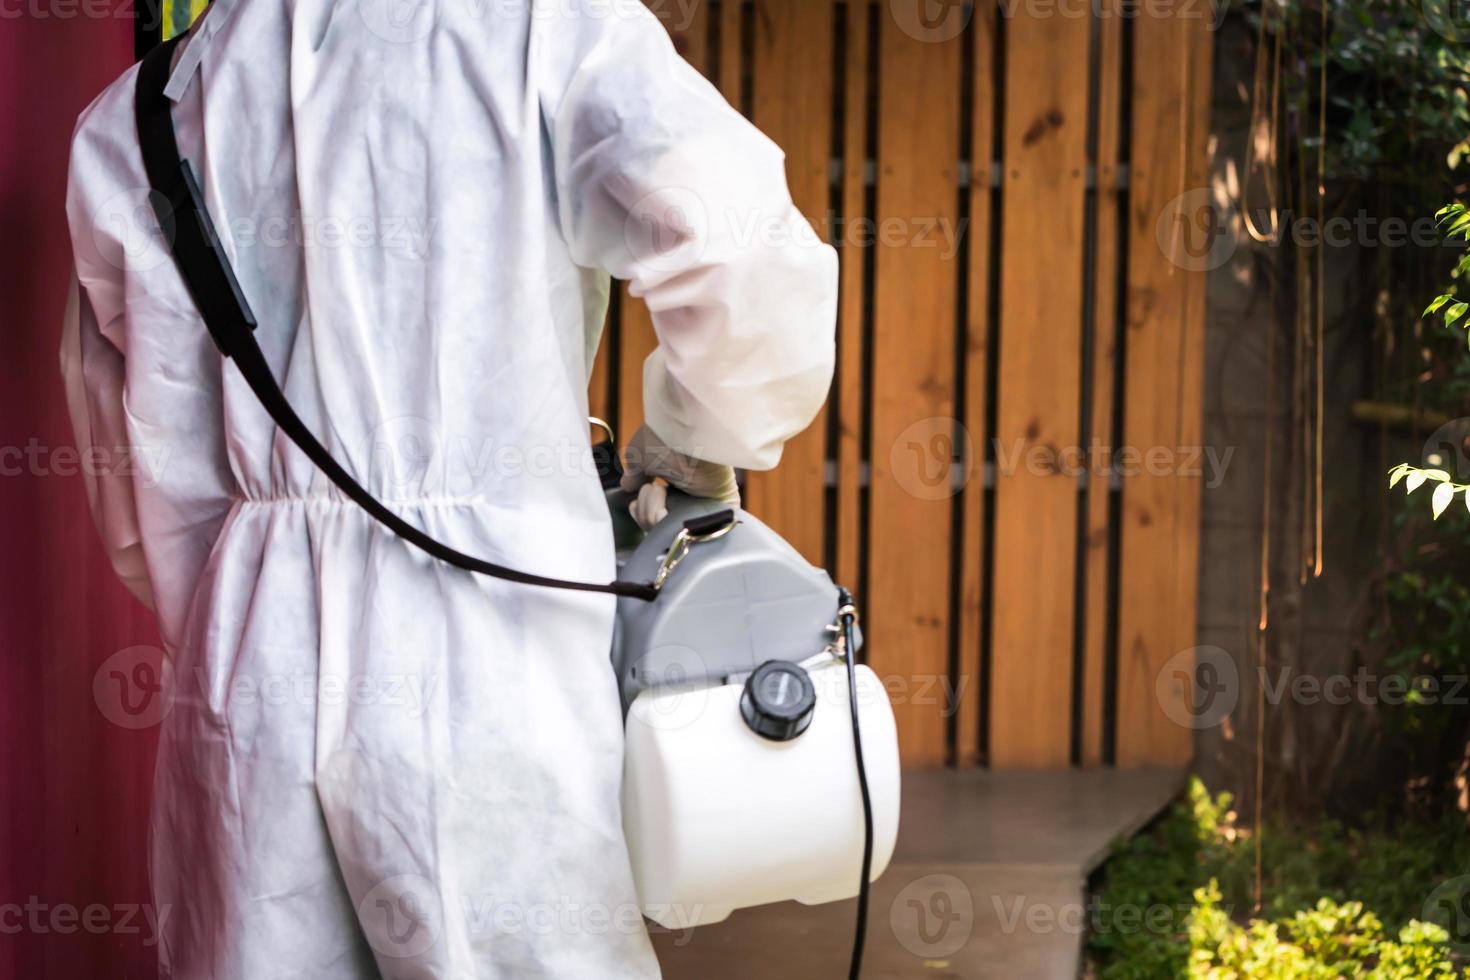 técnico profissional em traje de prevenção com sua máquina esterilizadora e sprays de água desinfetantes no campo externo para purificação do coronavírus foto